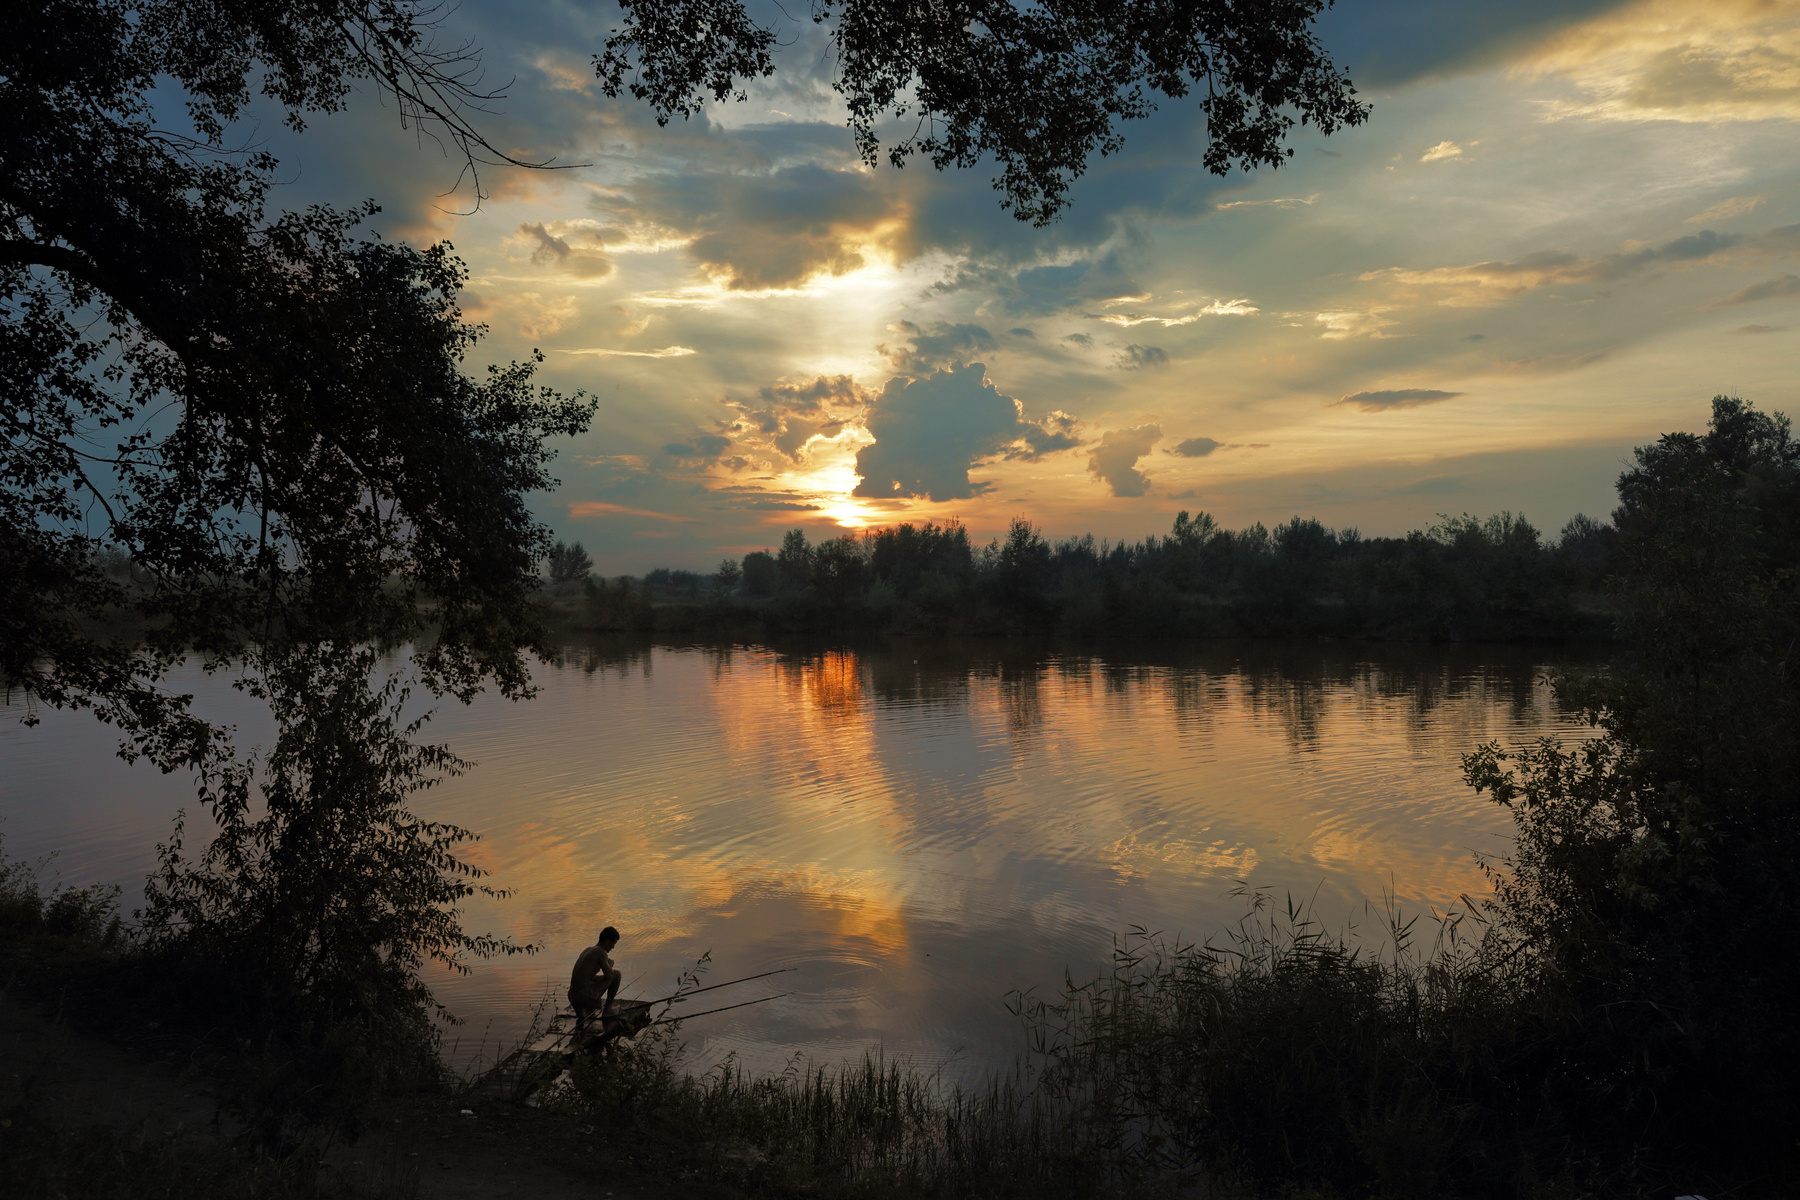 Поймать золотую рыбку.... рыбалка лето вечер закат река рыбак удочка покой тишина природа солнце небо облака идиллия